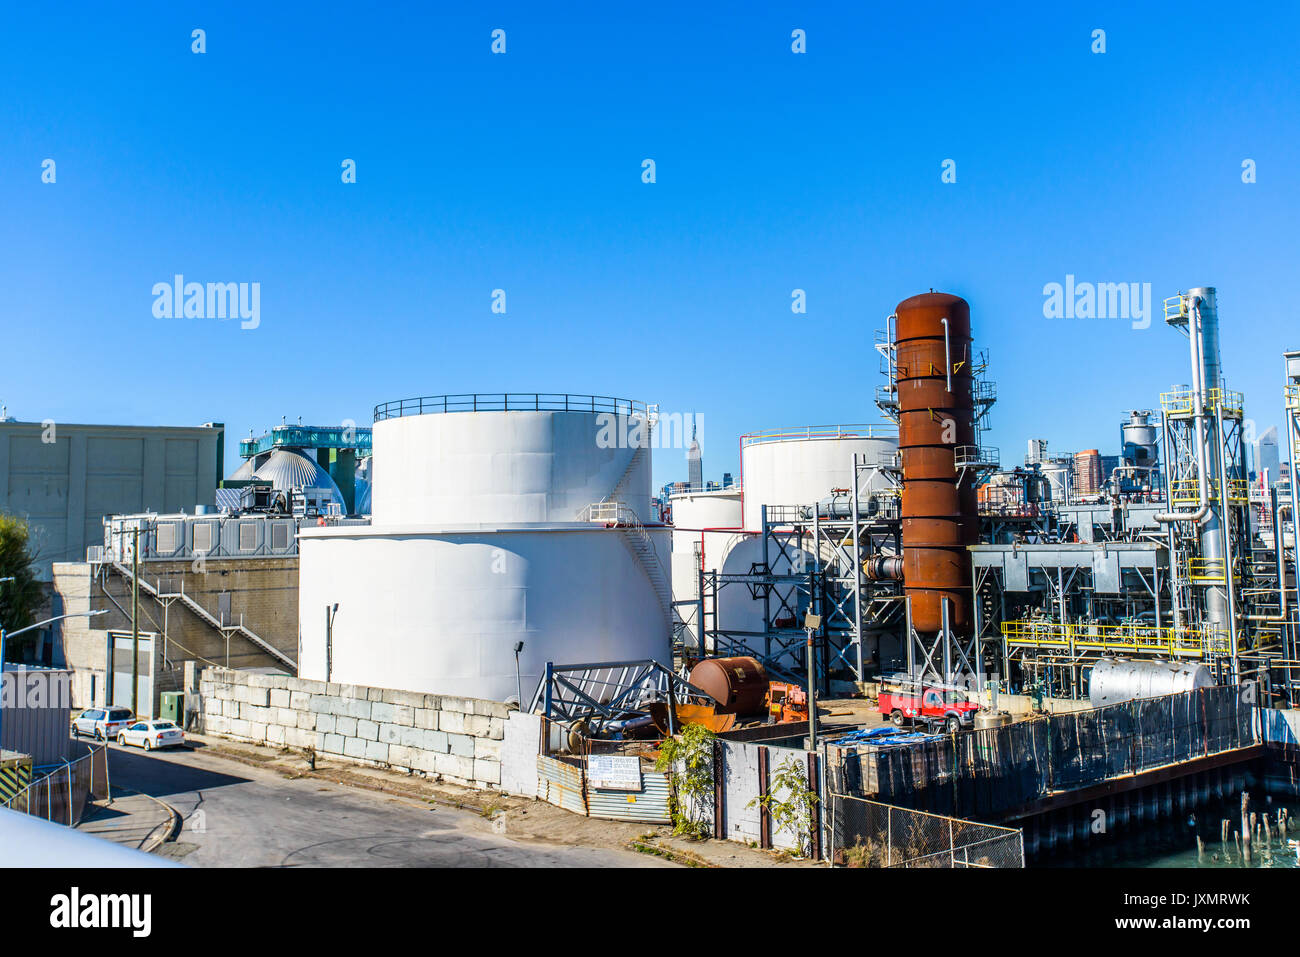 Portrait de réservoirs de stockage et les tuyaux au niveau de l'usine industrielle de biocarburants Banque D'Images